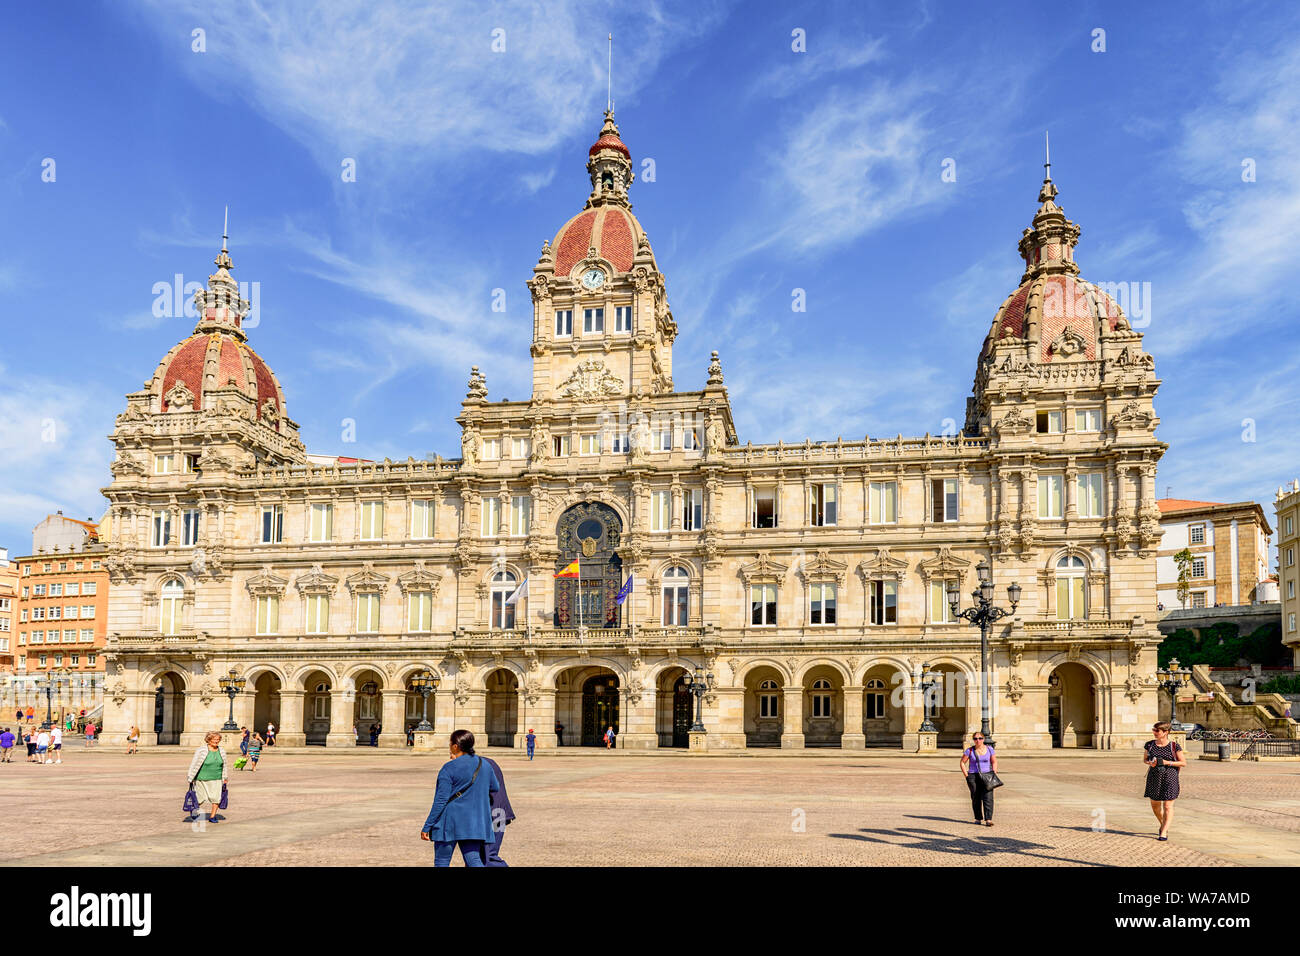 A La Coruna, Spain. The ornate building town hall Palacio Municipal in Maria Pita square. A La coruna. Spain Stock Photo